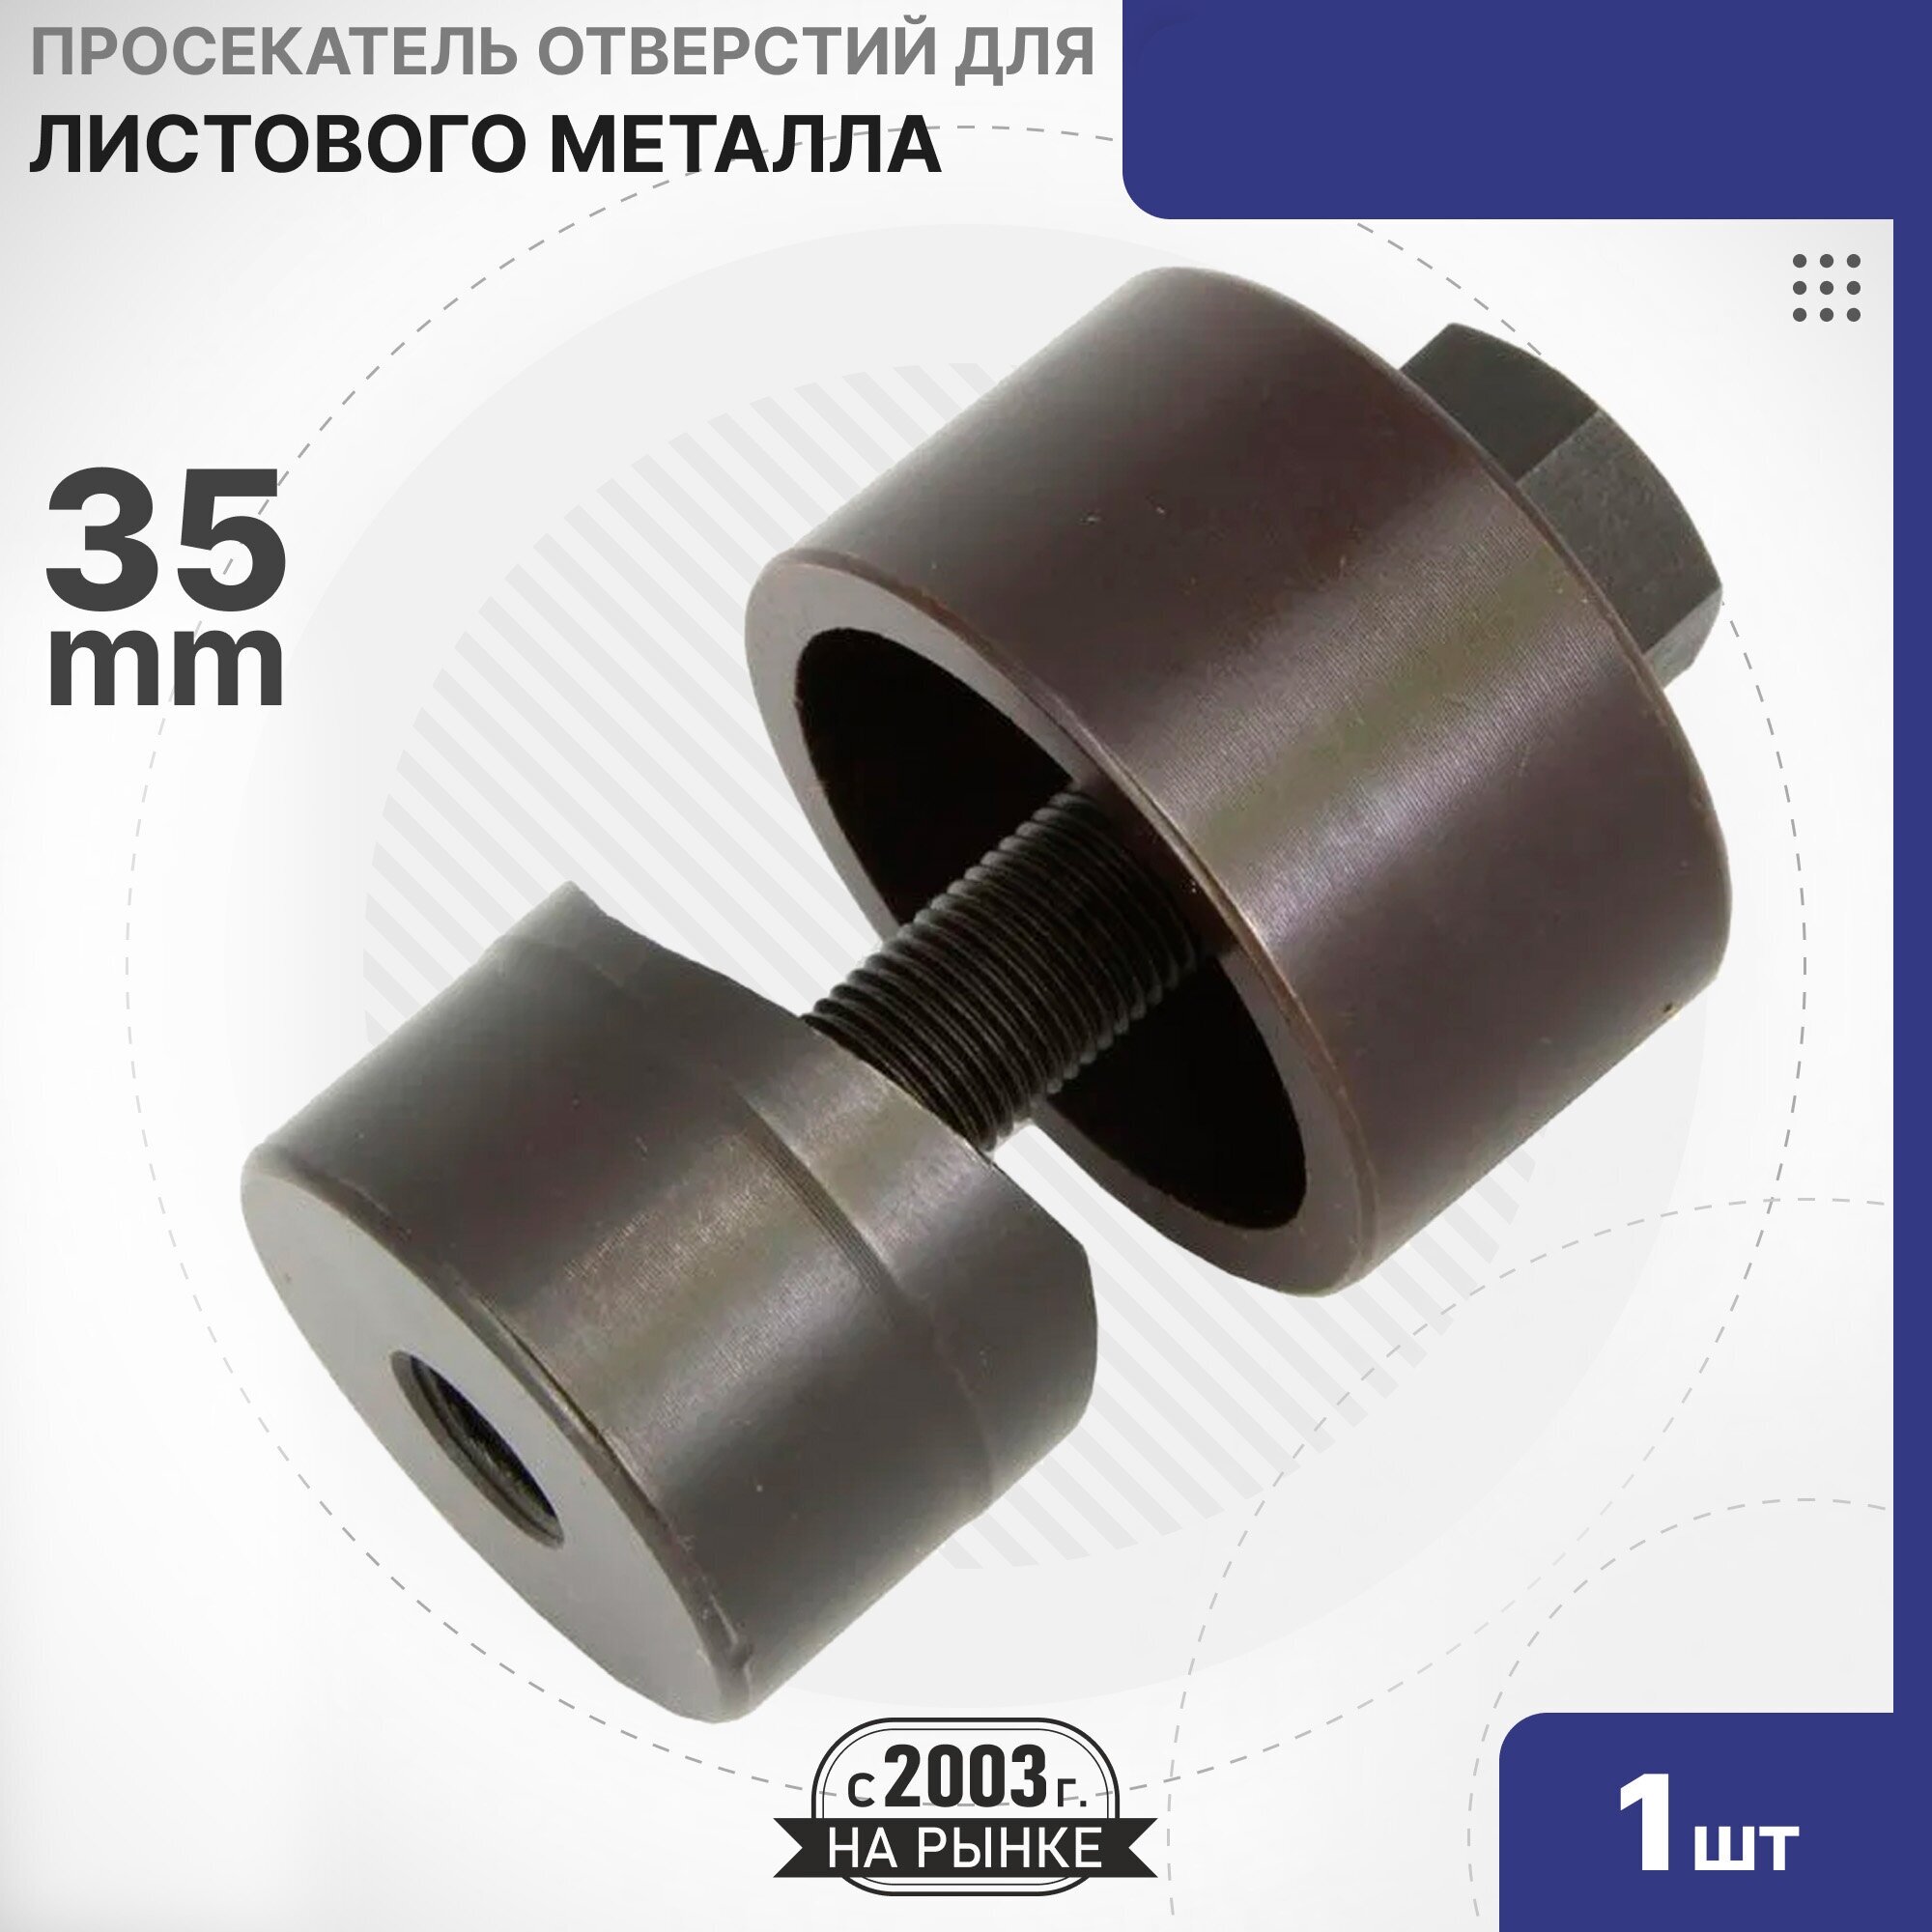 Особенности отверстий 35 мм под смеситель в металлических мойках